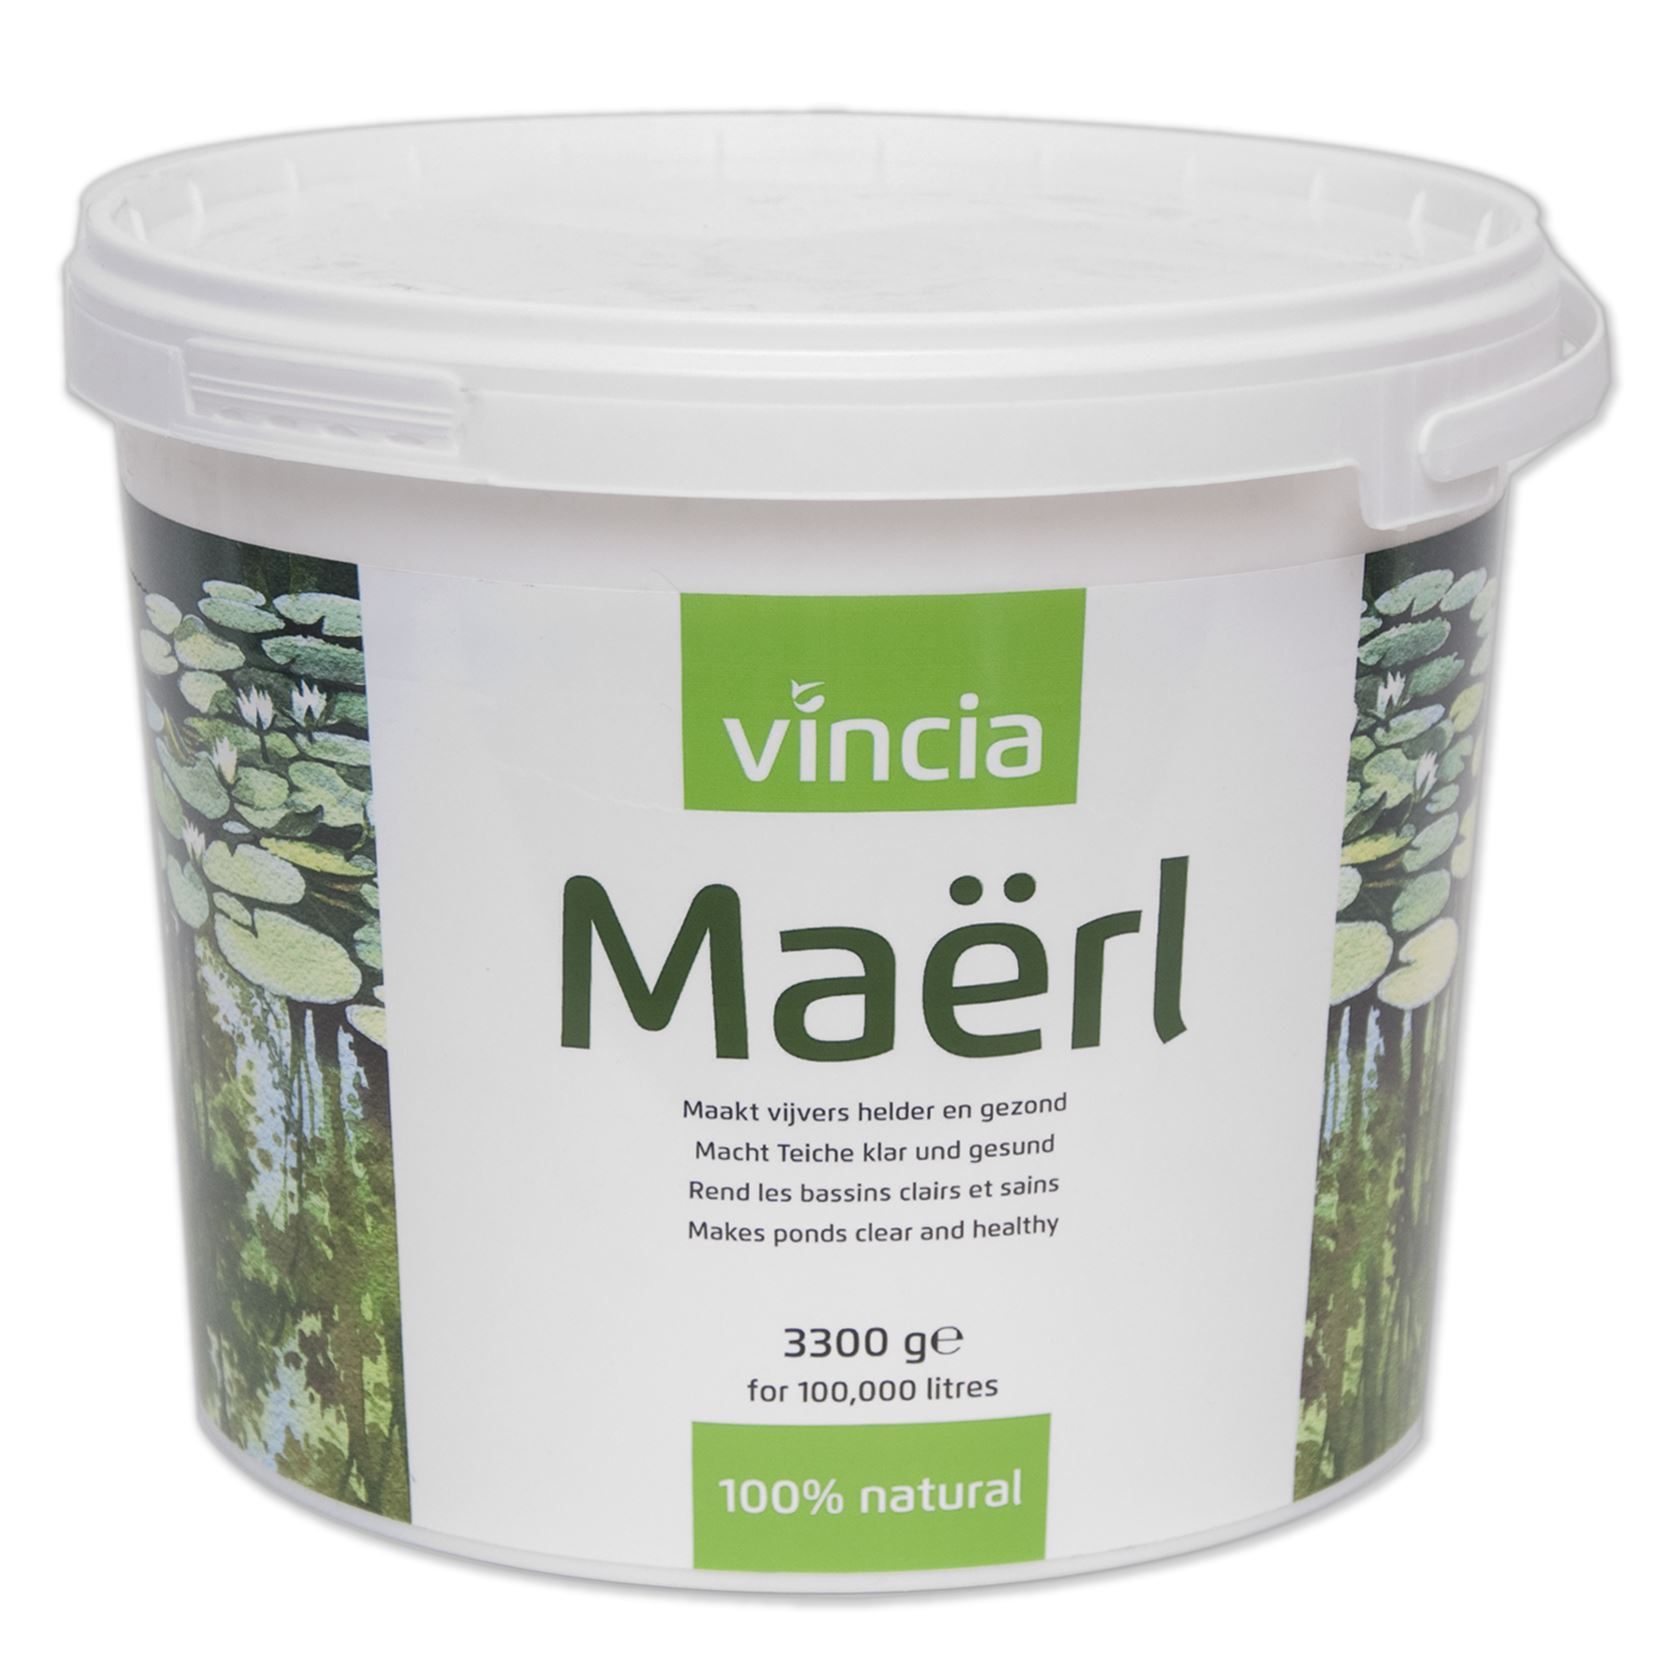 Vincia-Maerl-3300-g-natuurproduct-voor-helder-water-en-een-gezonde-vijver